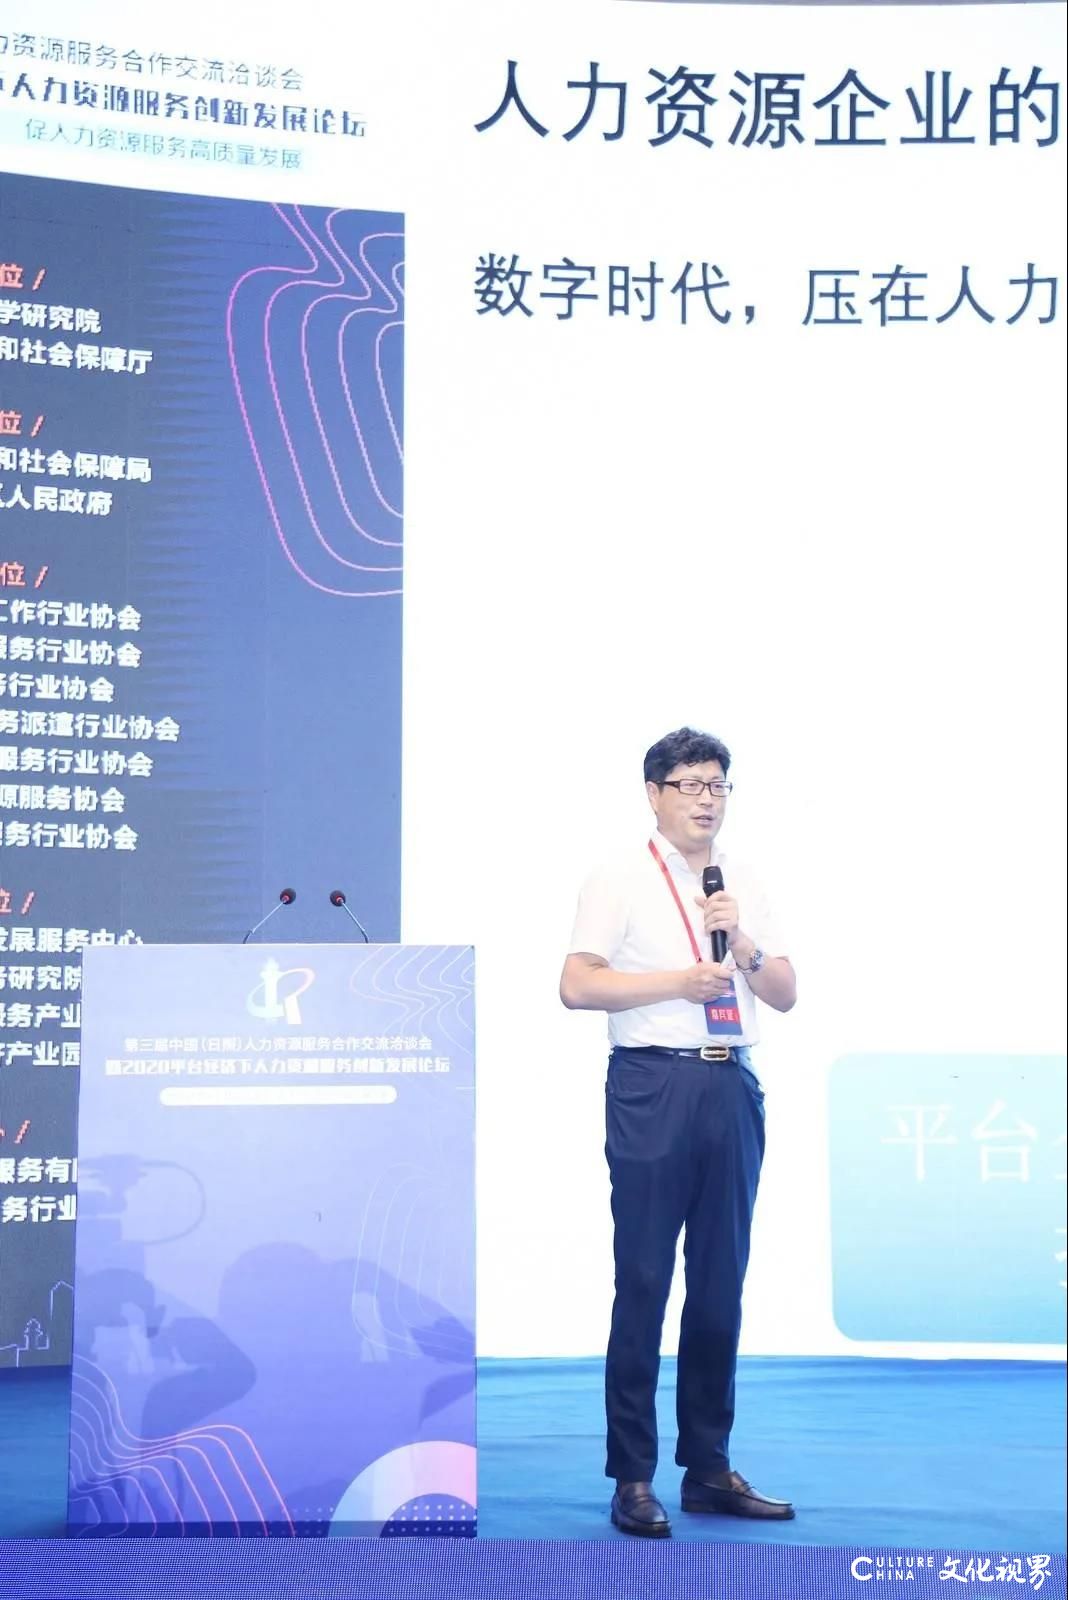 中国人力资源服务创新发展论坛举行，博尔捷企业集团创始人、董事长侯正宇博士发表《人力资源企业的平台化转型》主题演讲